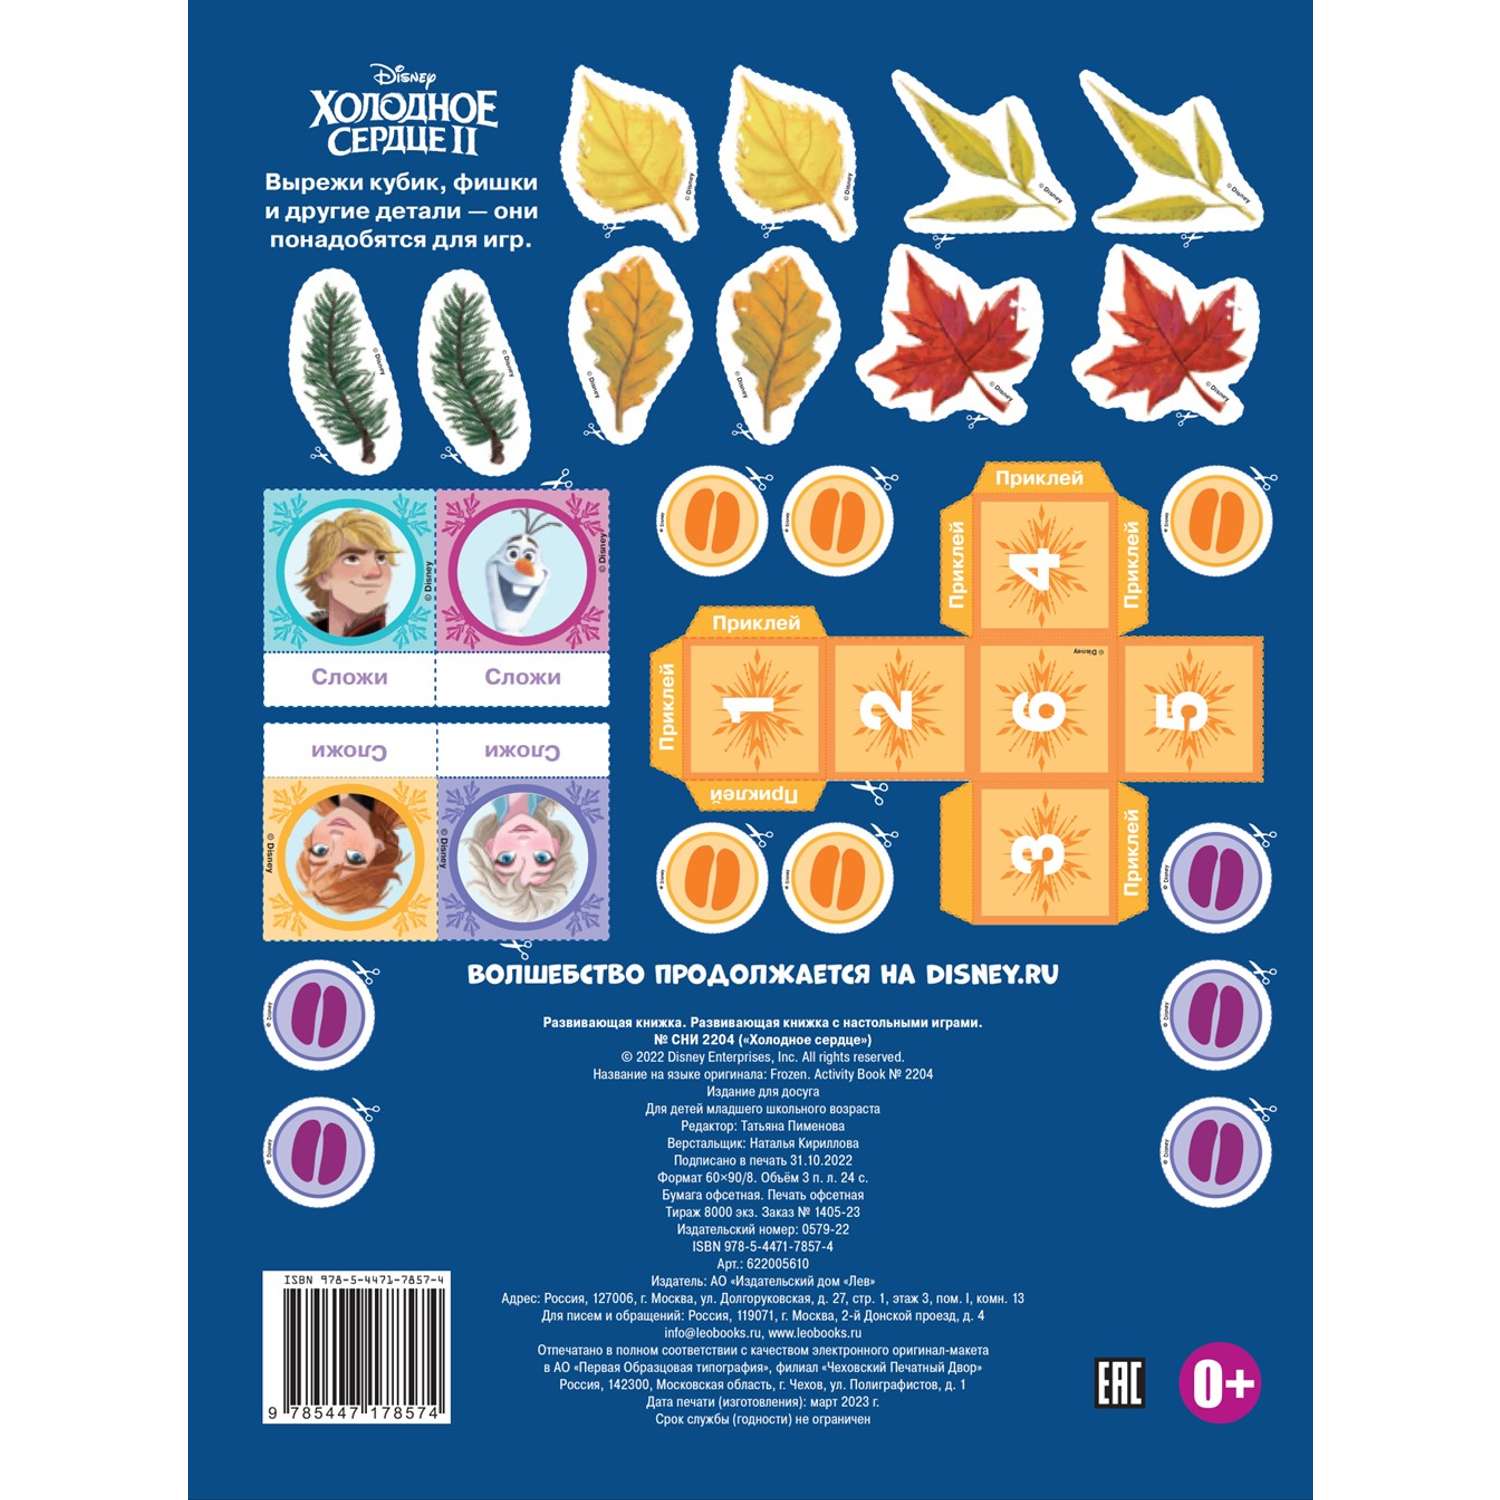 Комплект Disney Холодное сердце Раскраска+ Сборник настольных игр + Многоразовые наклейки - фото 8